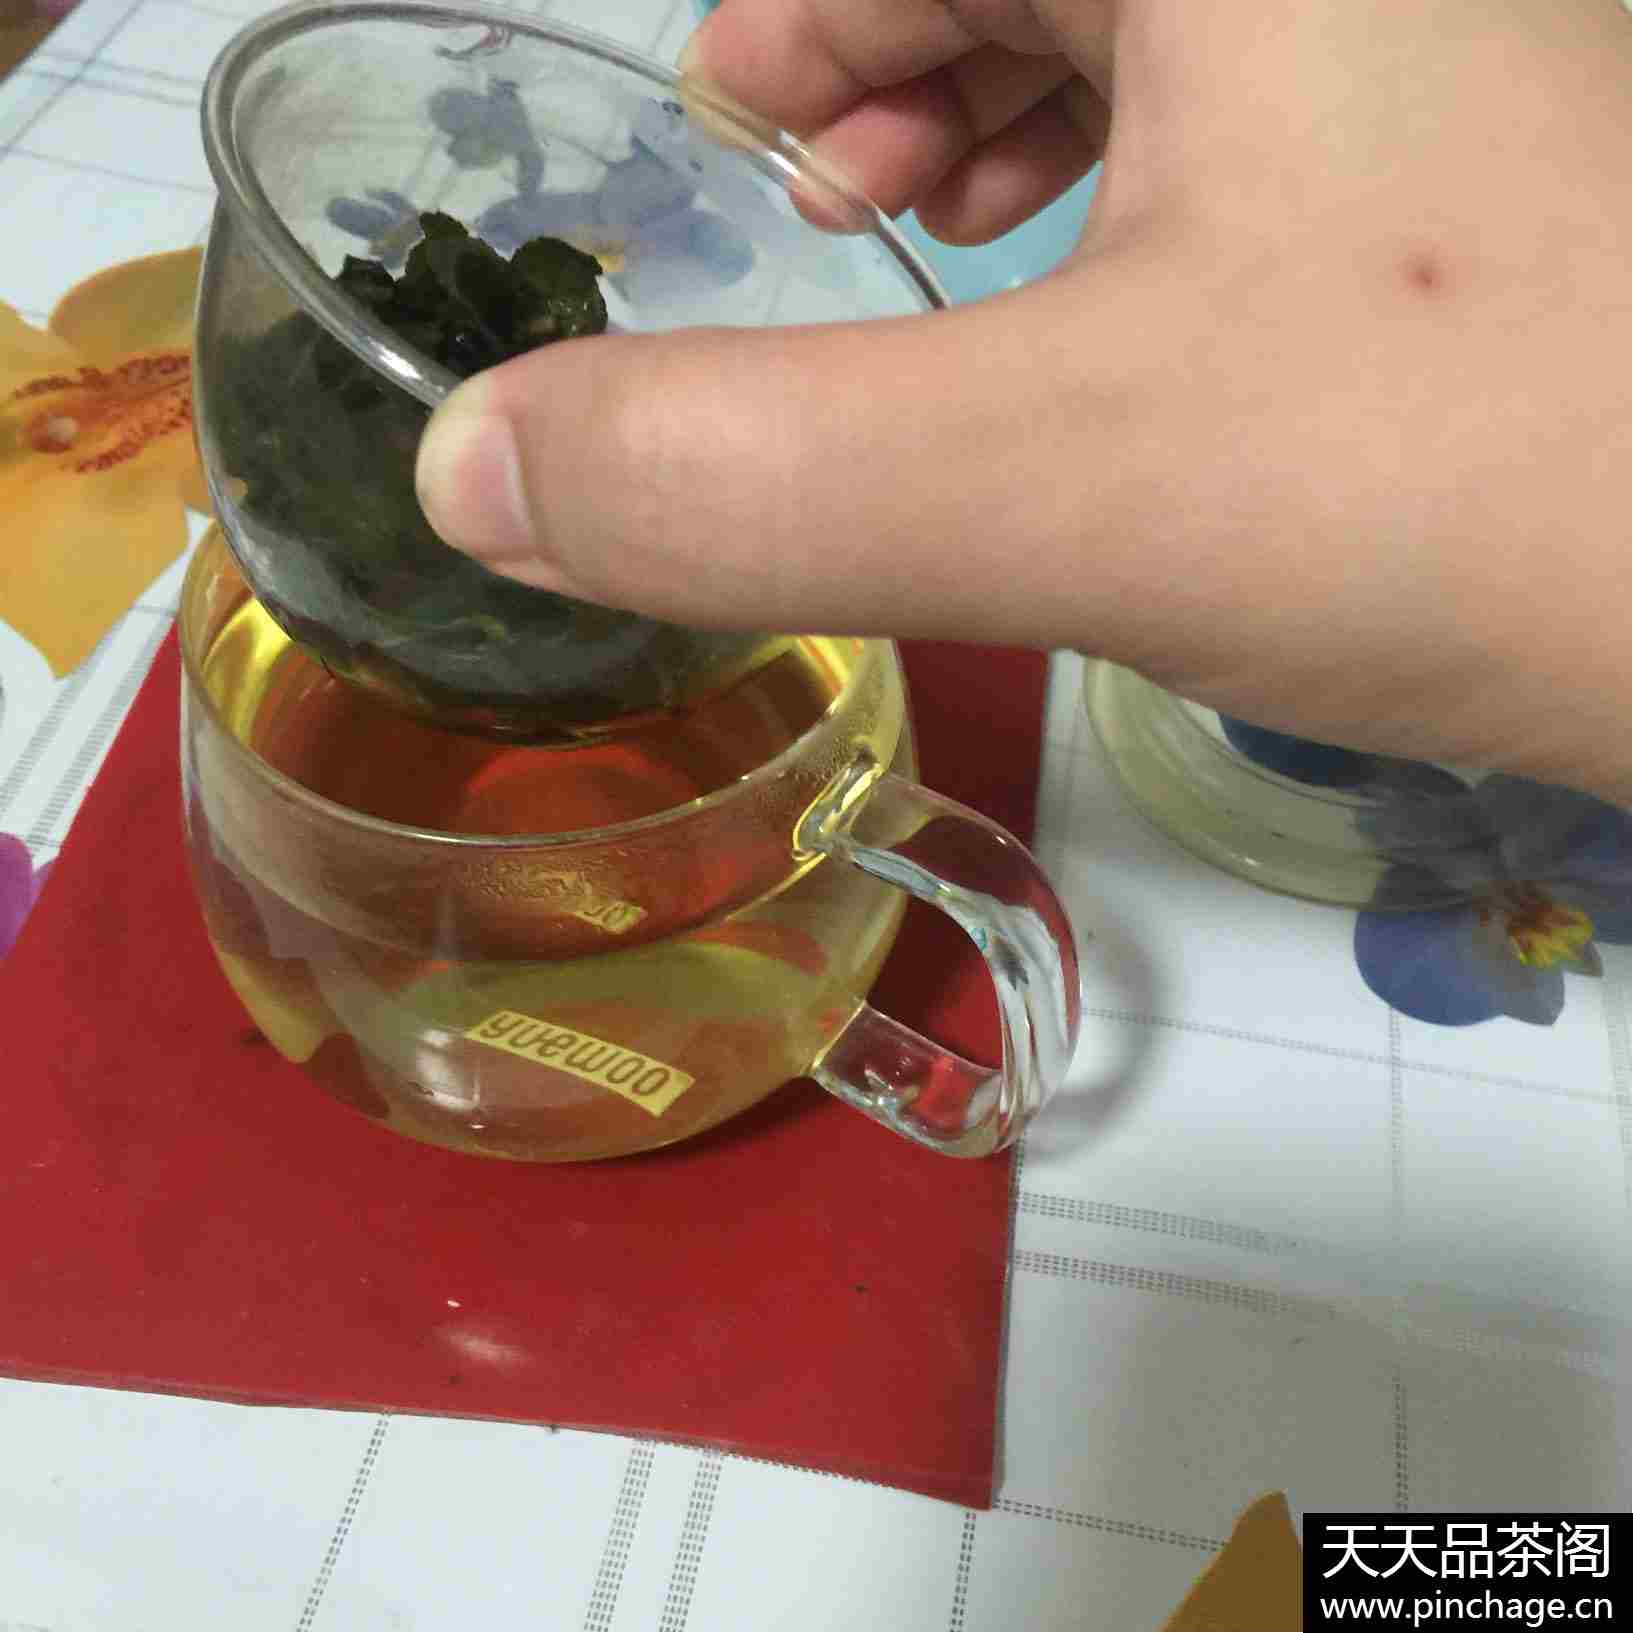 铁观音清香型秋茶